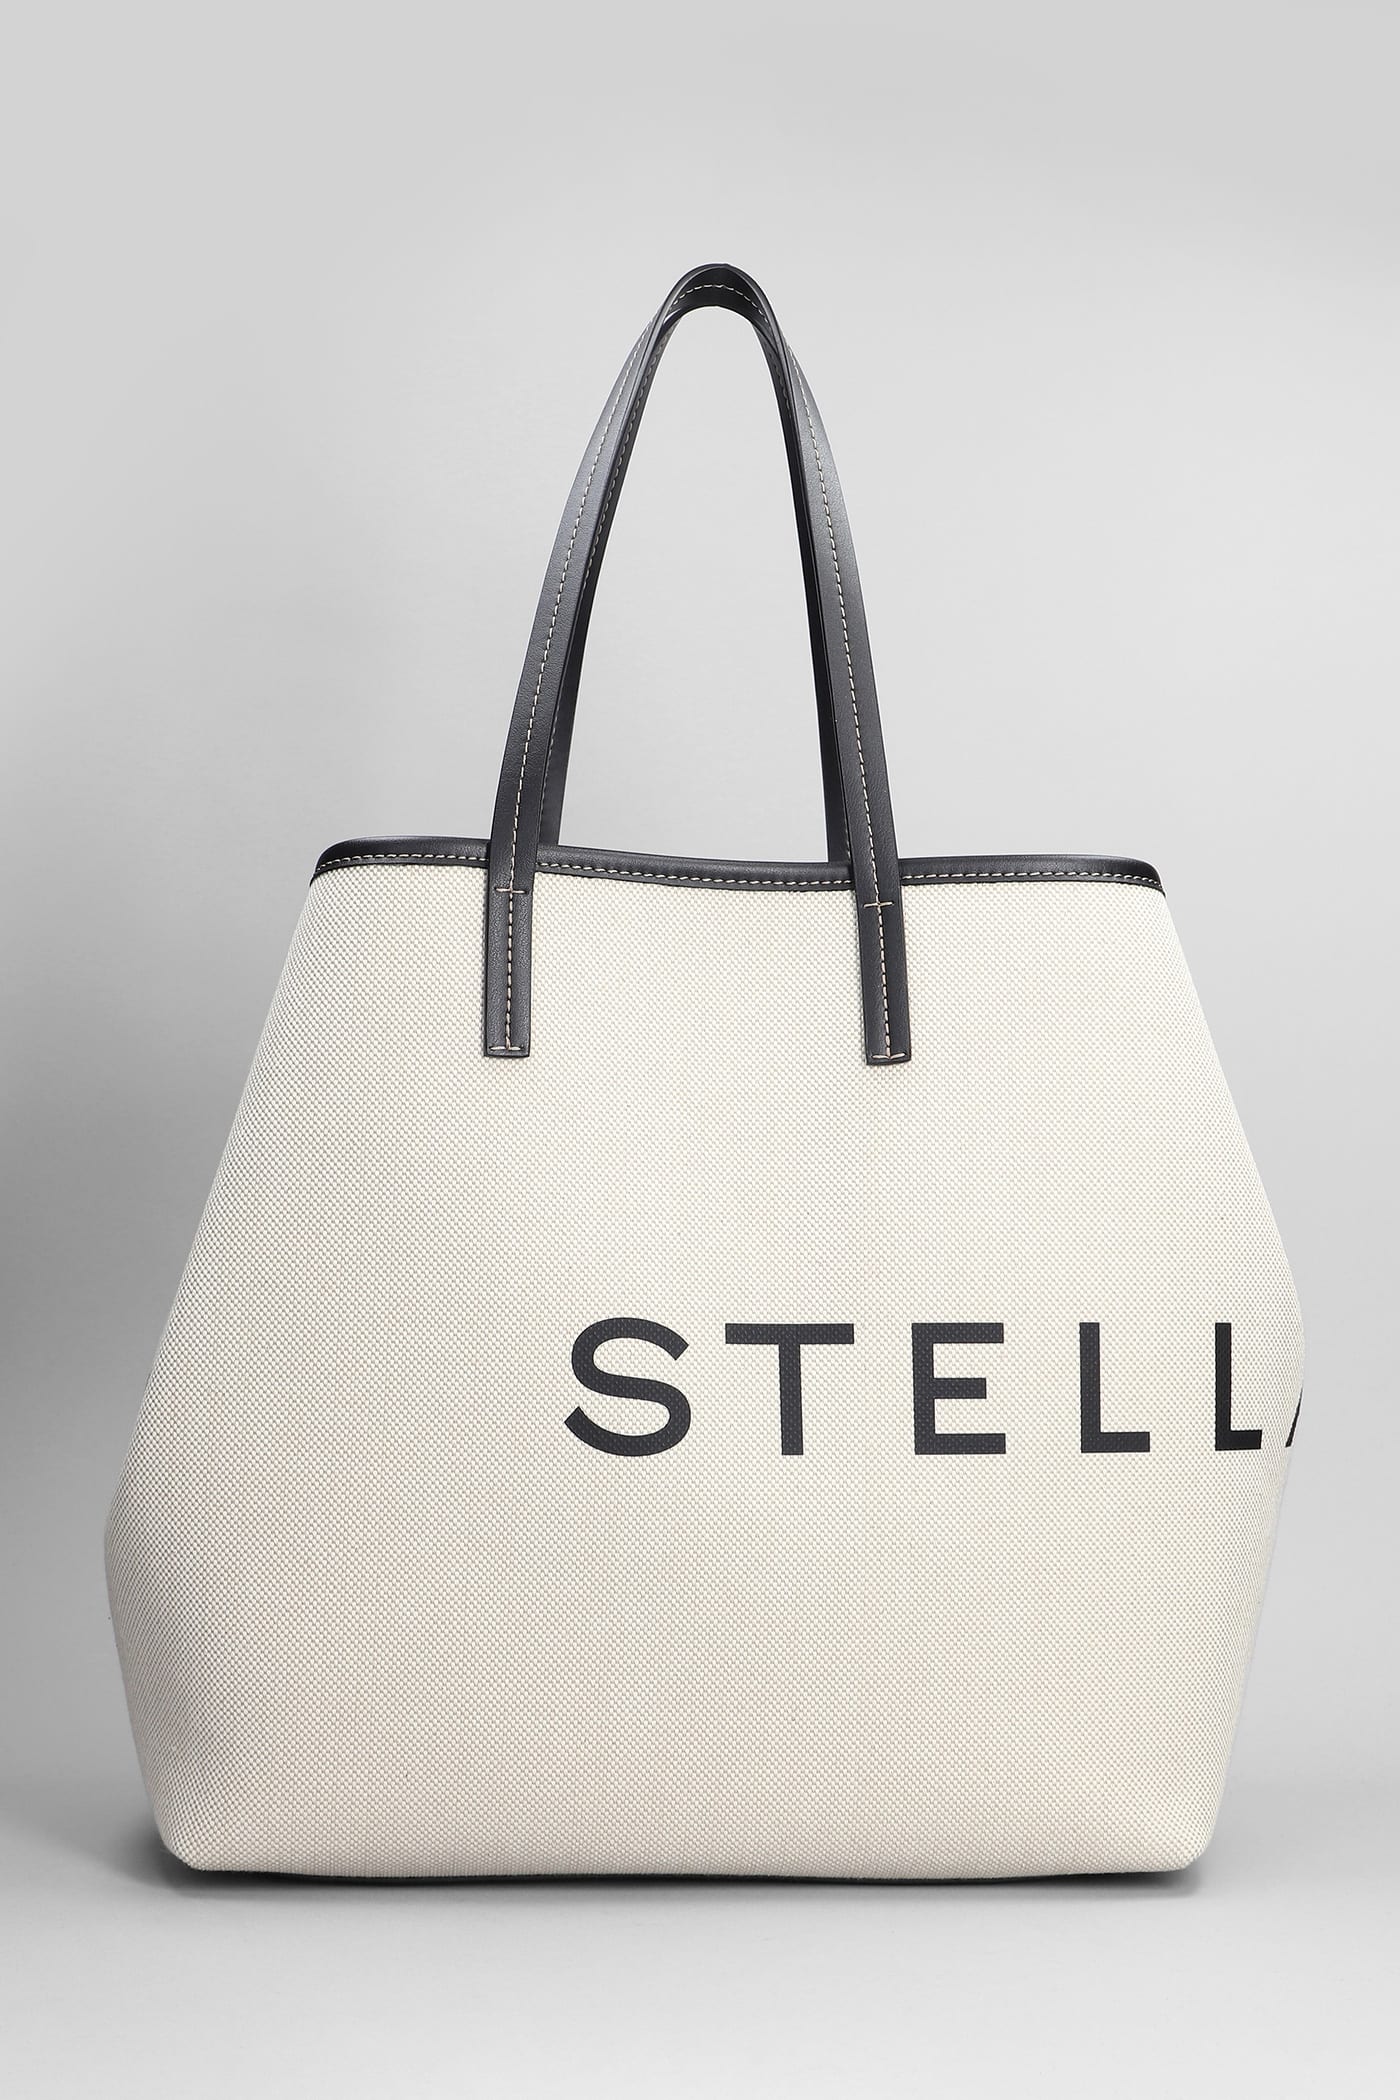 Stella Mccartney Stella Logo Tote In Grey Canvas